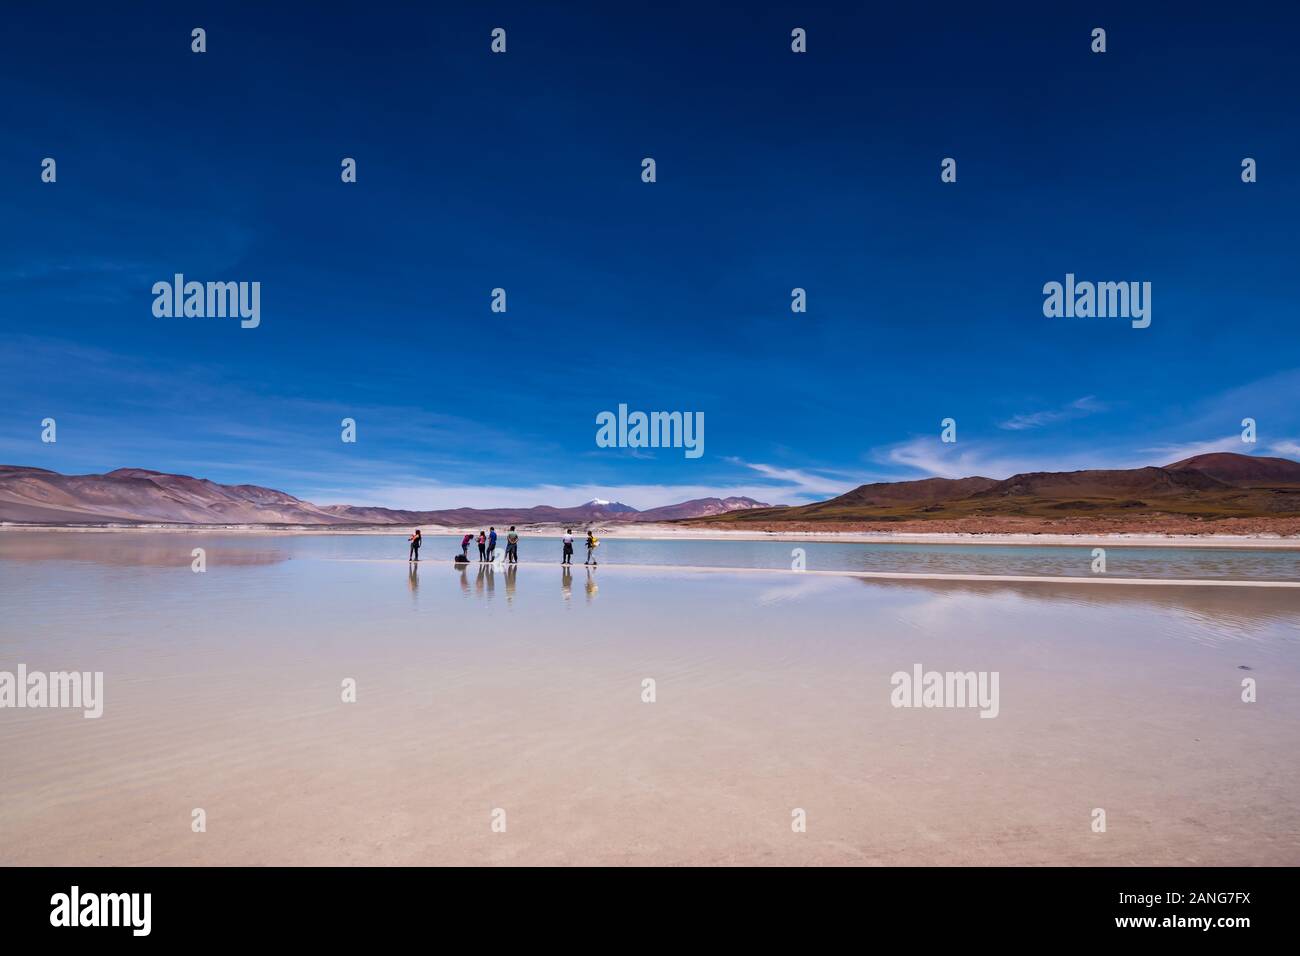 Persone in piedi su un piccolo promontorio nel mezzo di un mare di sale nel nord del Cile / deserto di Atacama / Salar Aguas Calientes con vista verso le Ande. Foto Stock